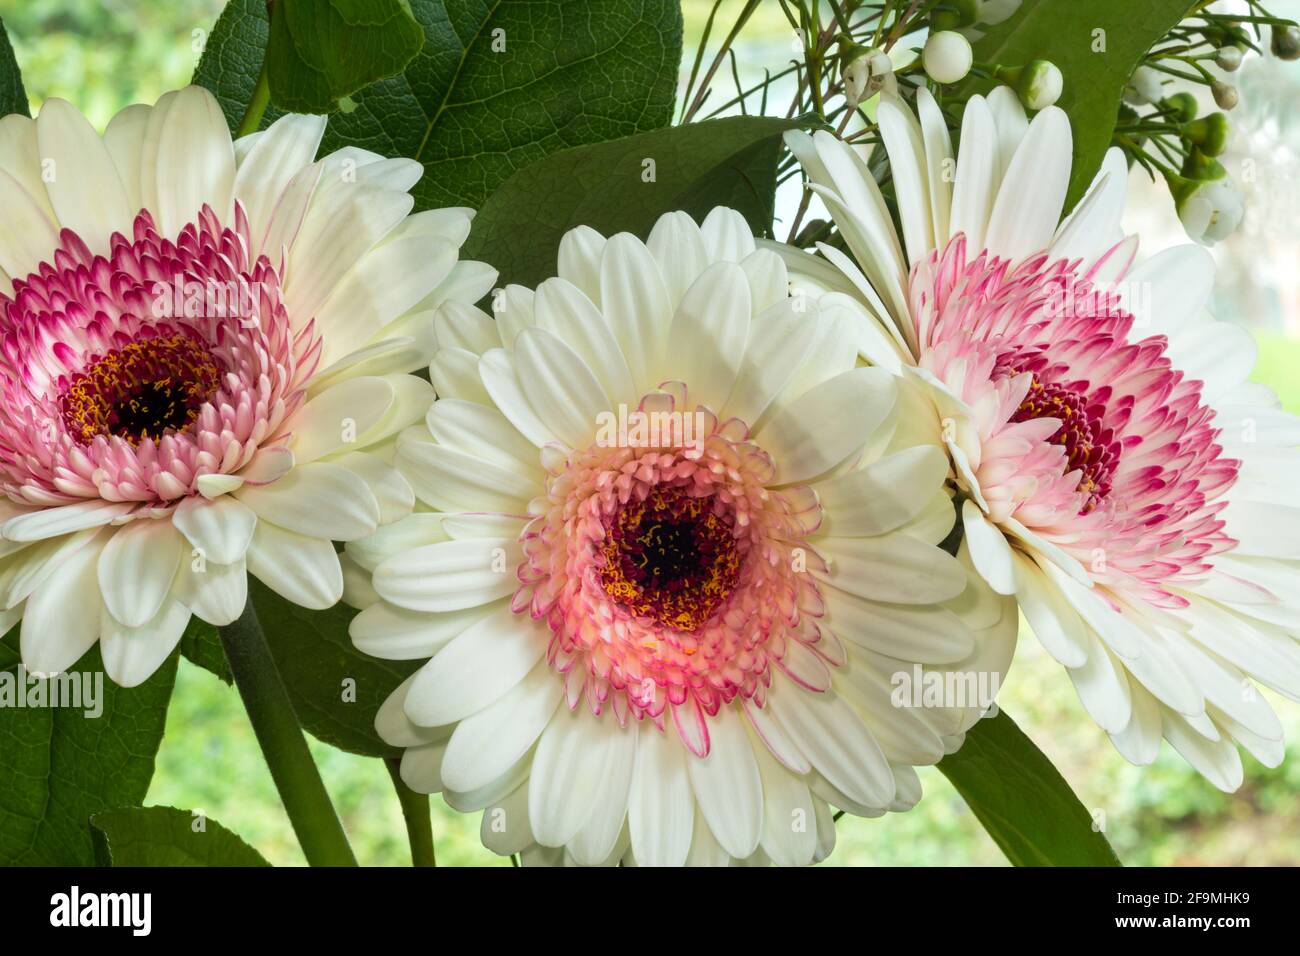 WA19485-00...WASHINGTON - fiori di Gerbara rosa e bianco in un bouquet floreale. Foto Stock